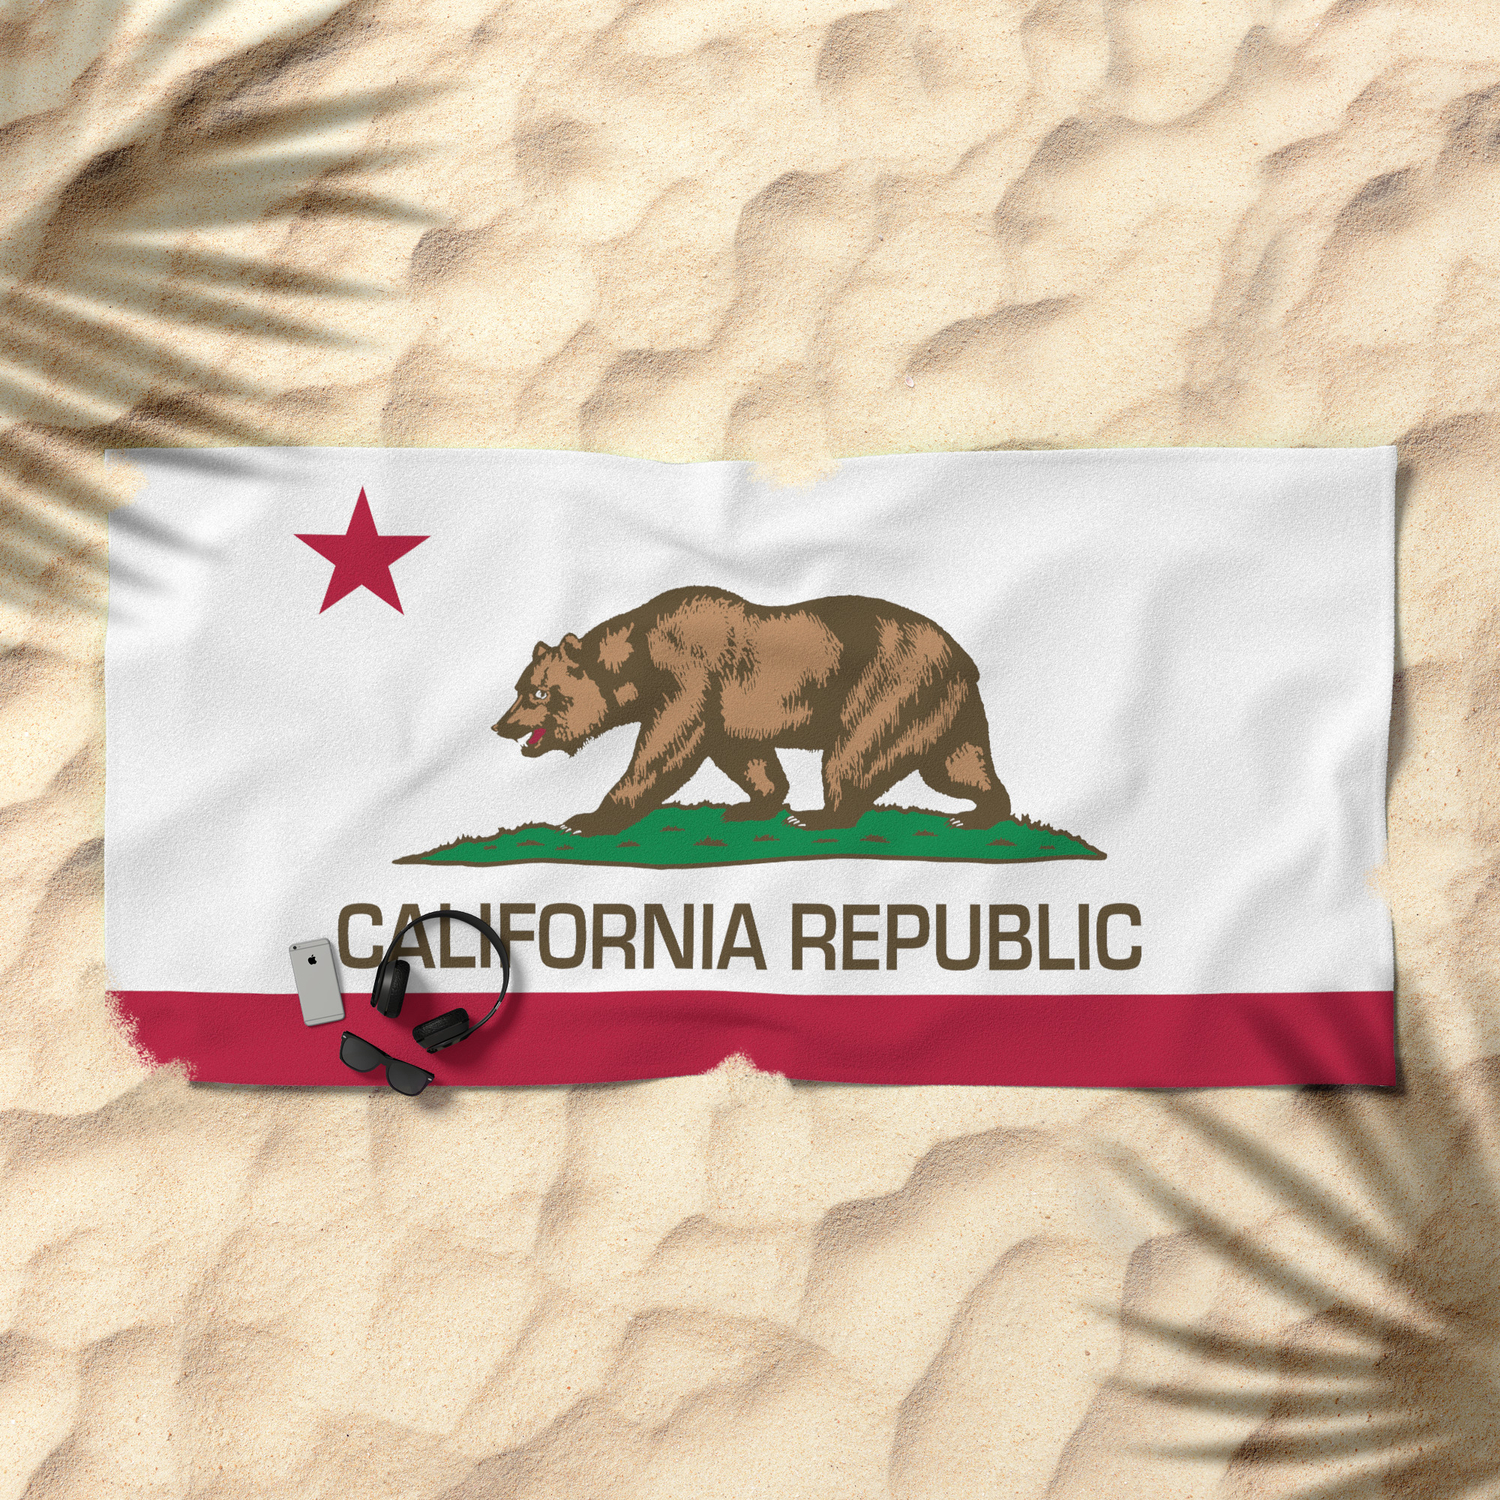 CASU Beach Towel California Republic Flag Serviette de Plage Microfibre Super Absorbant Personnalit/é Serviette de Bain Couverture de Plage /à S/échage Rapide